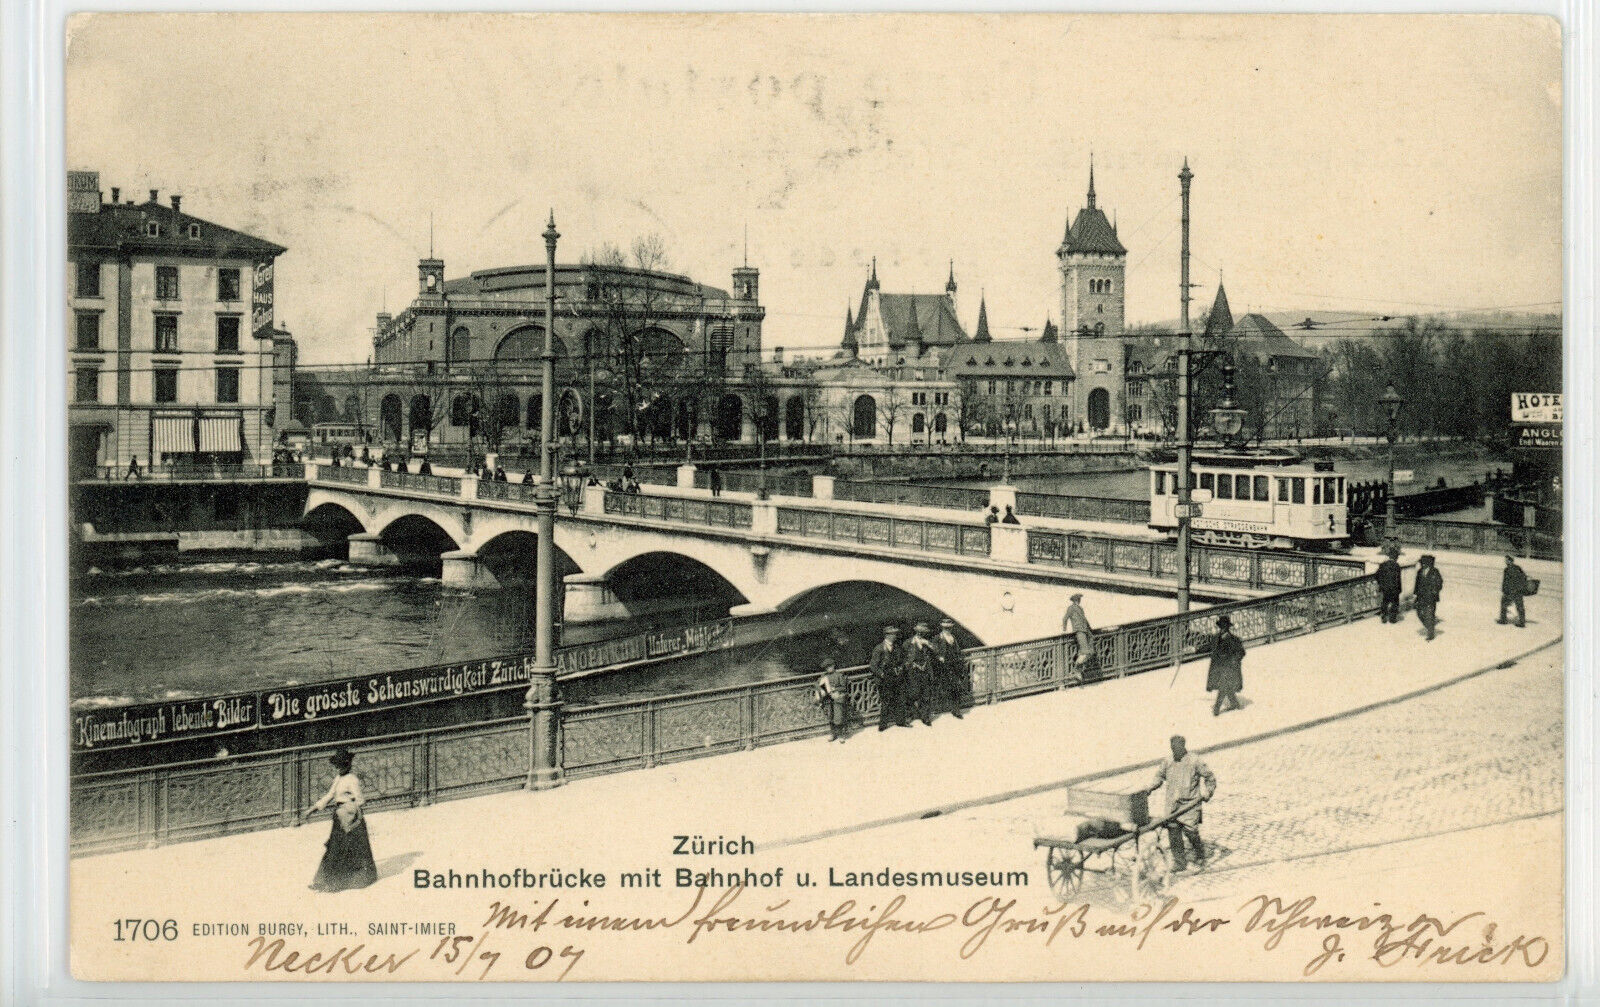 Train Station, Bridge, Swiss National Museum, Zurich, Switzerland 1907 postcard